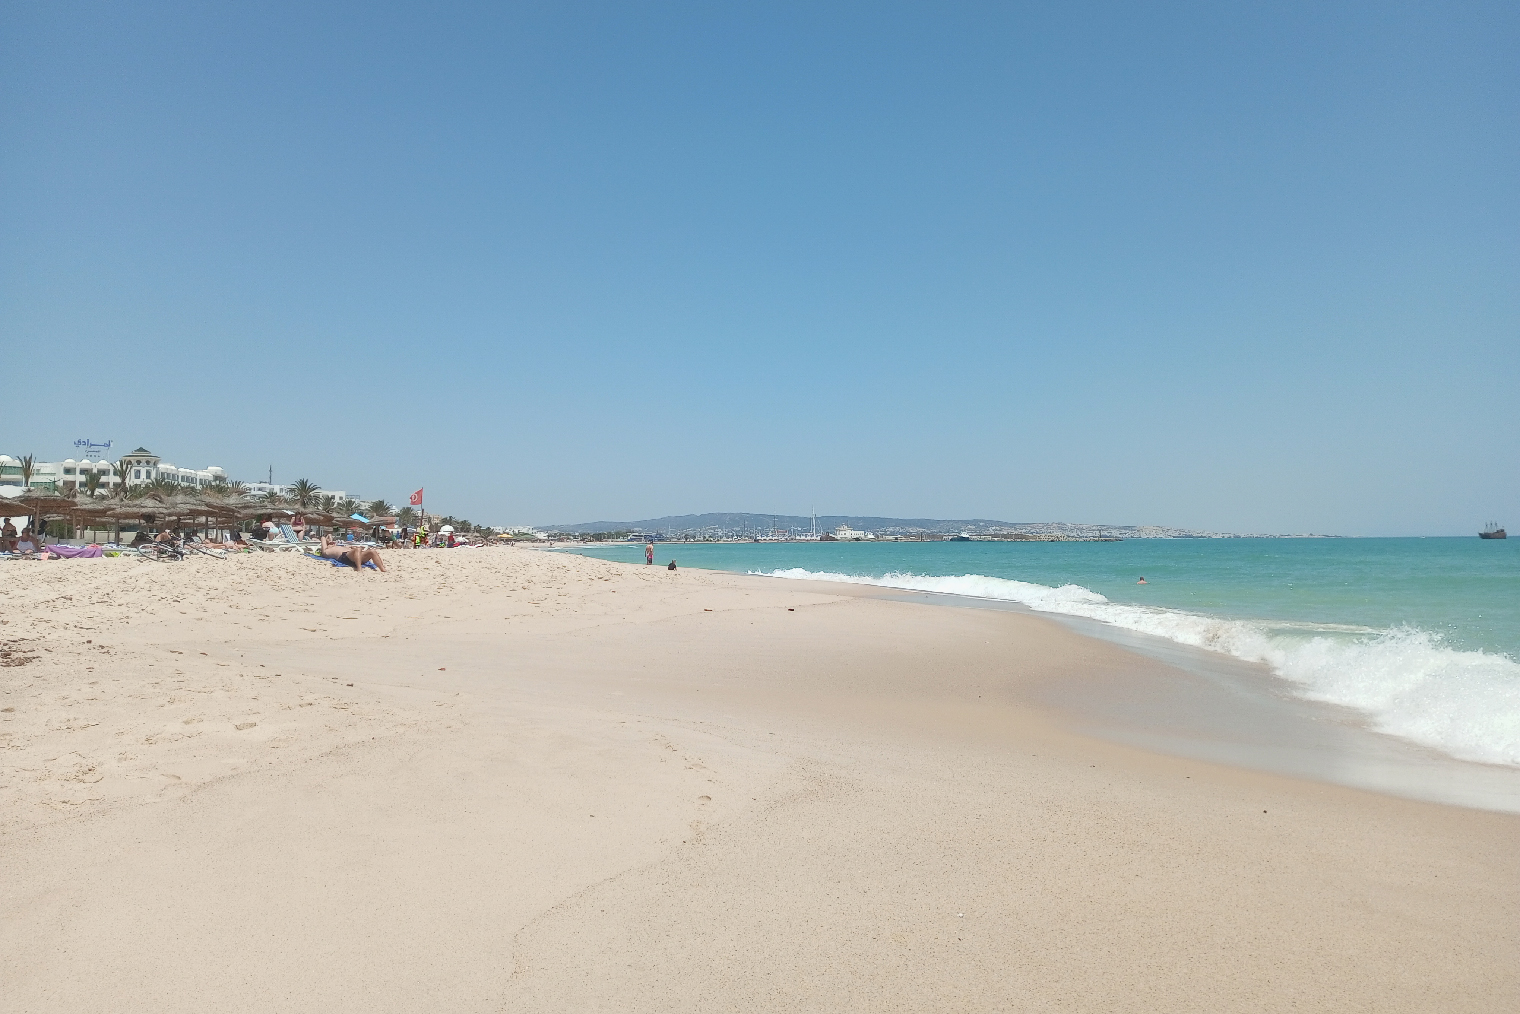 Пляж Ясмин-Хаммамета, который мне понравился